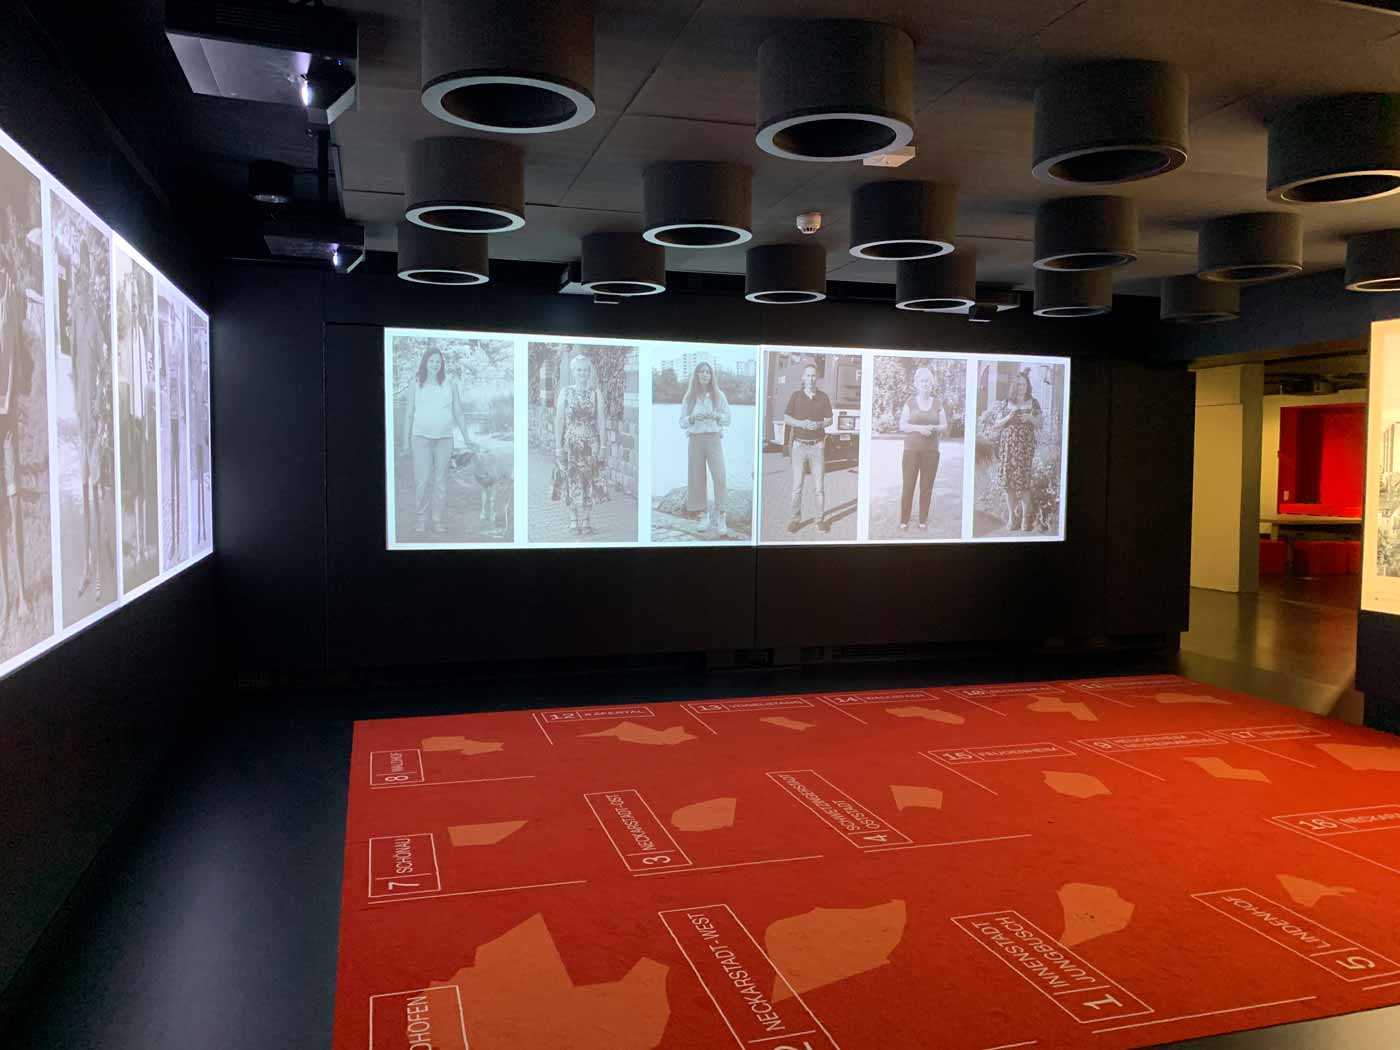 interaktive Ausstellung mit Zonen auf einem Teppich, Videoprojektionen und Lautsprechern